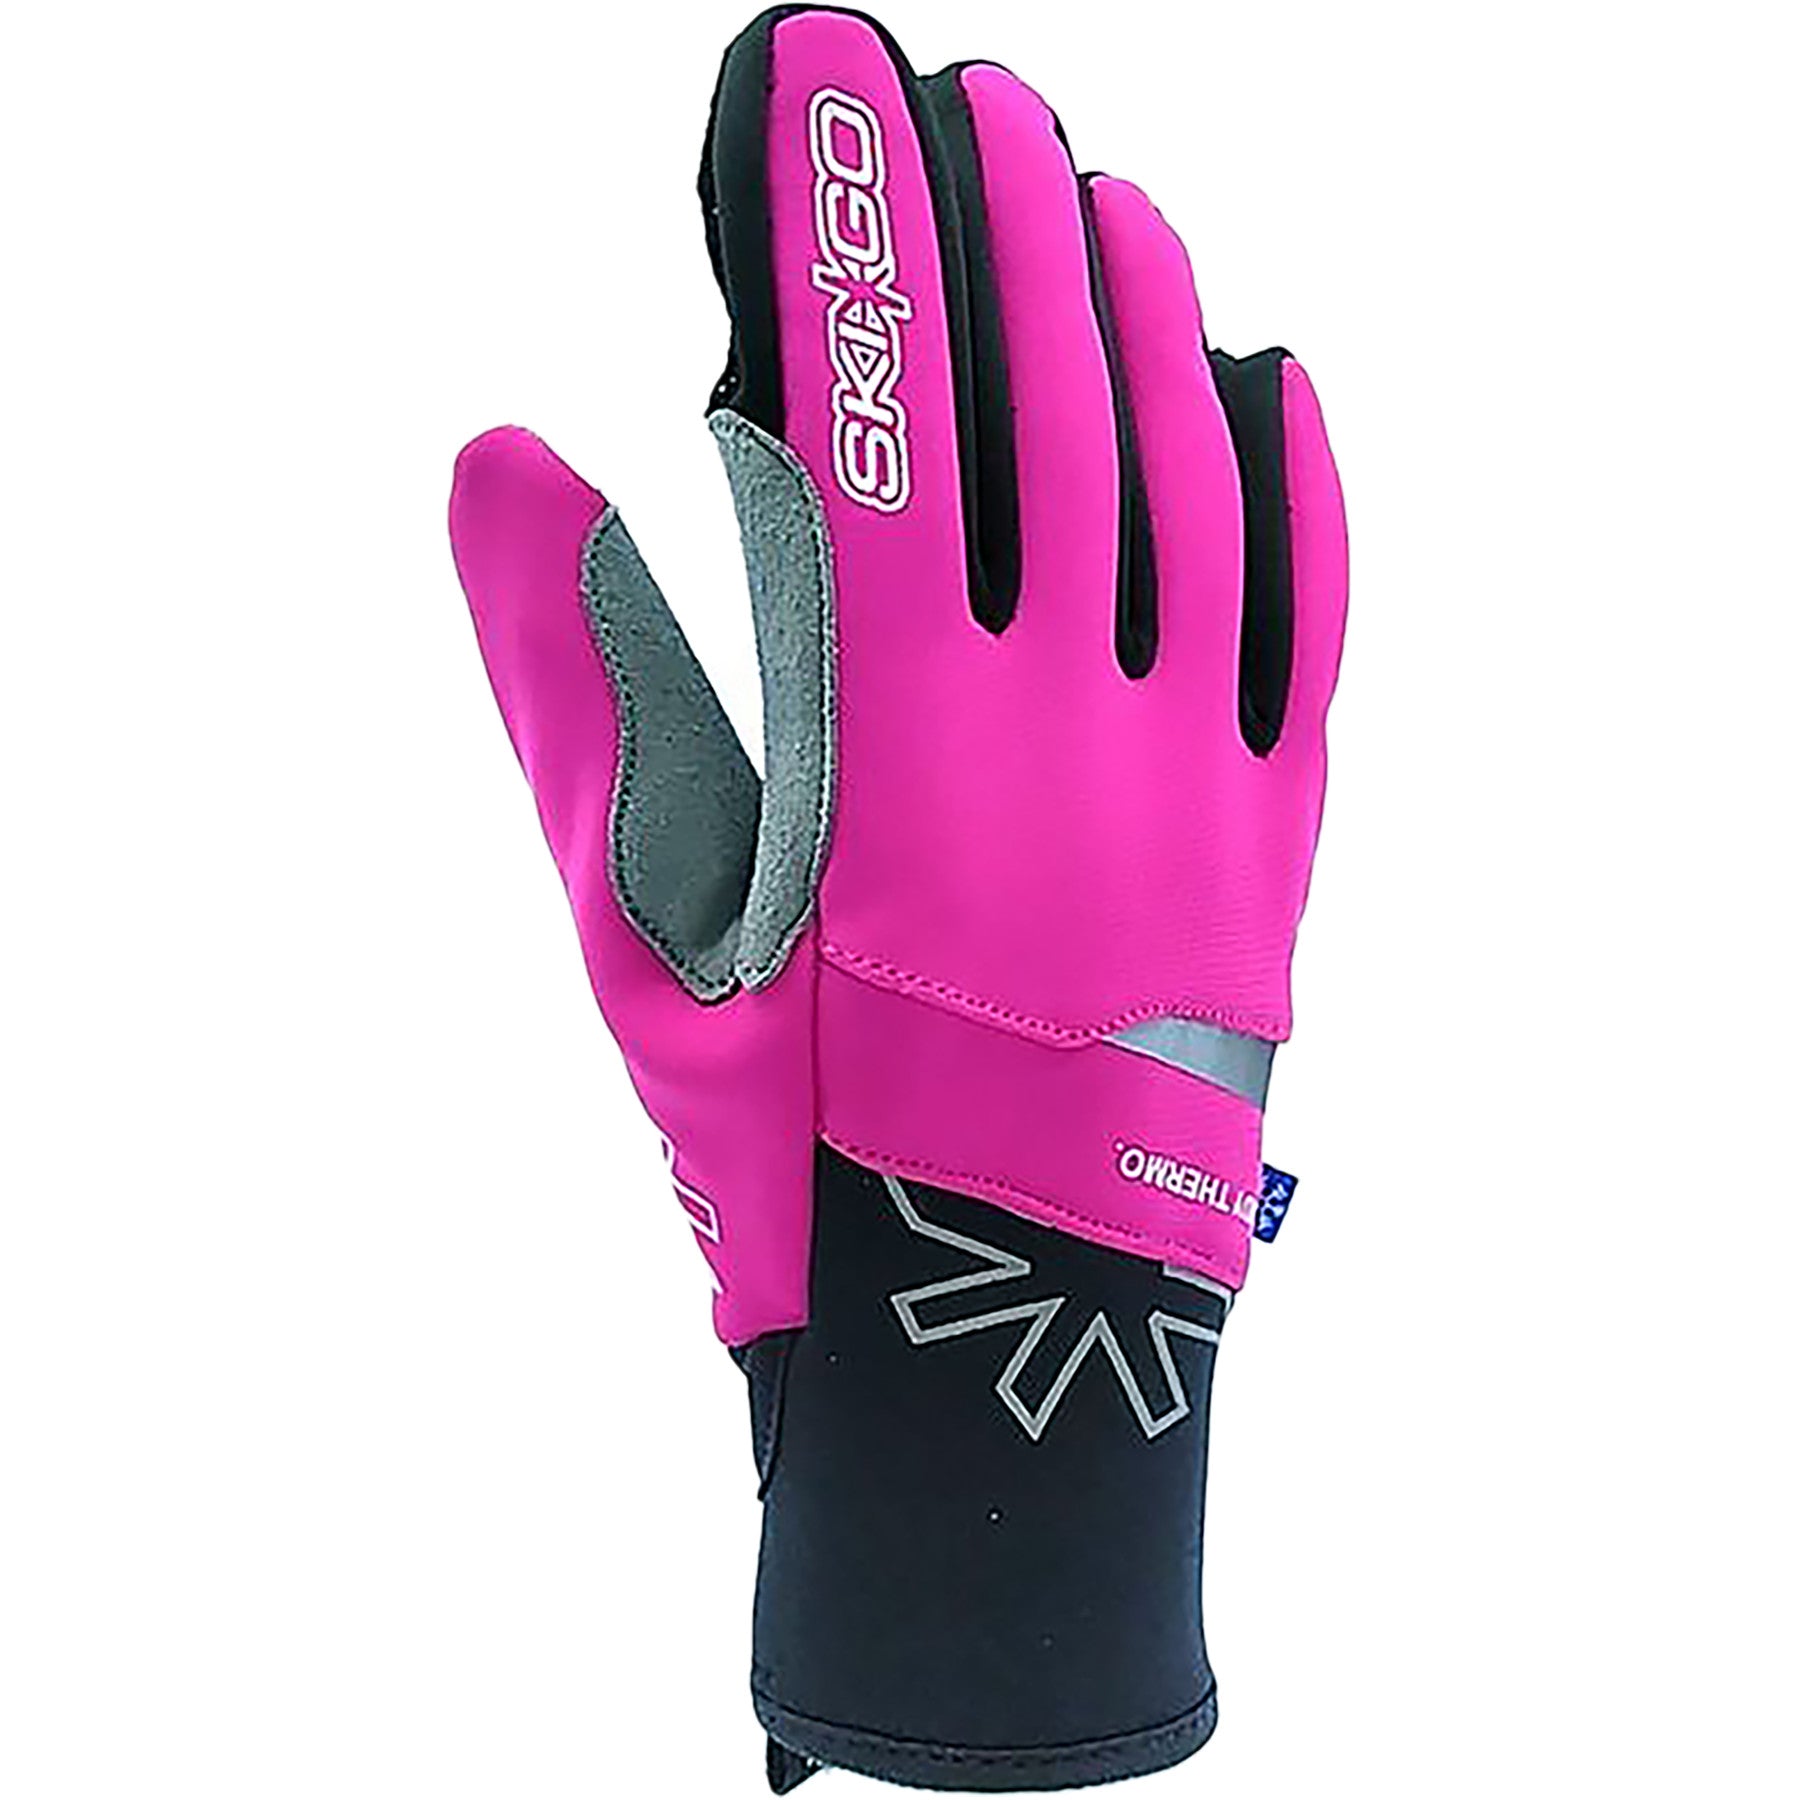 SkiGo X-Skin Thermo Lady Glove - 0